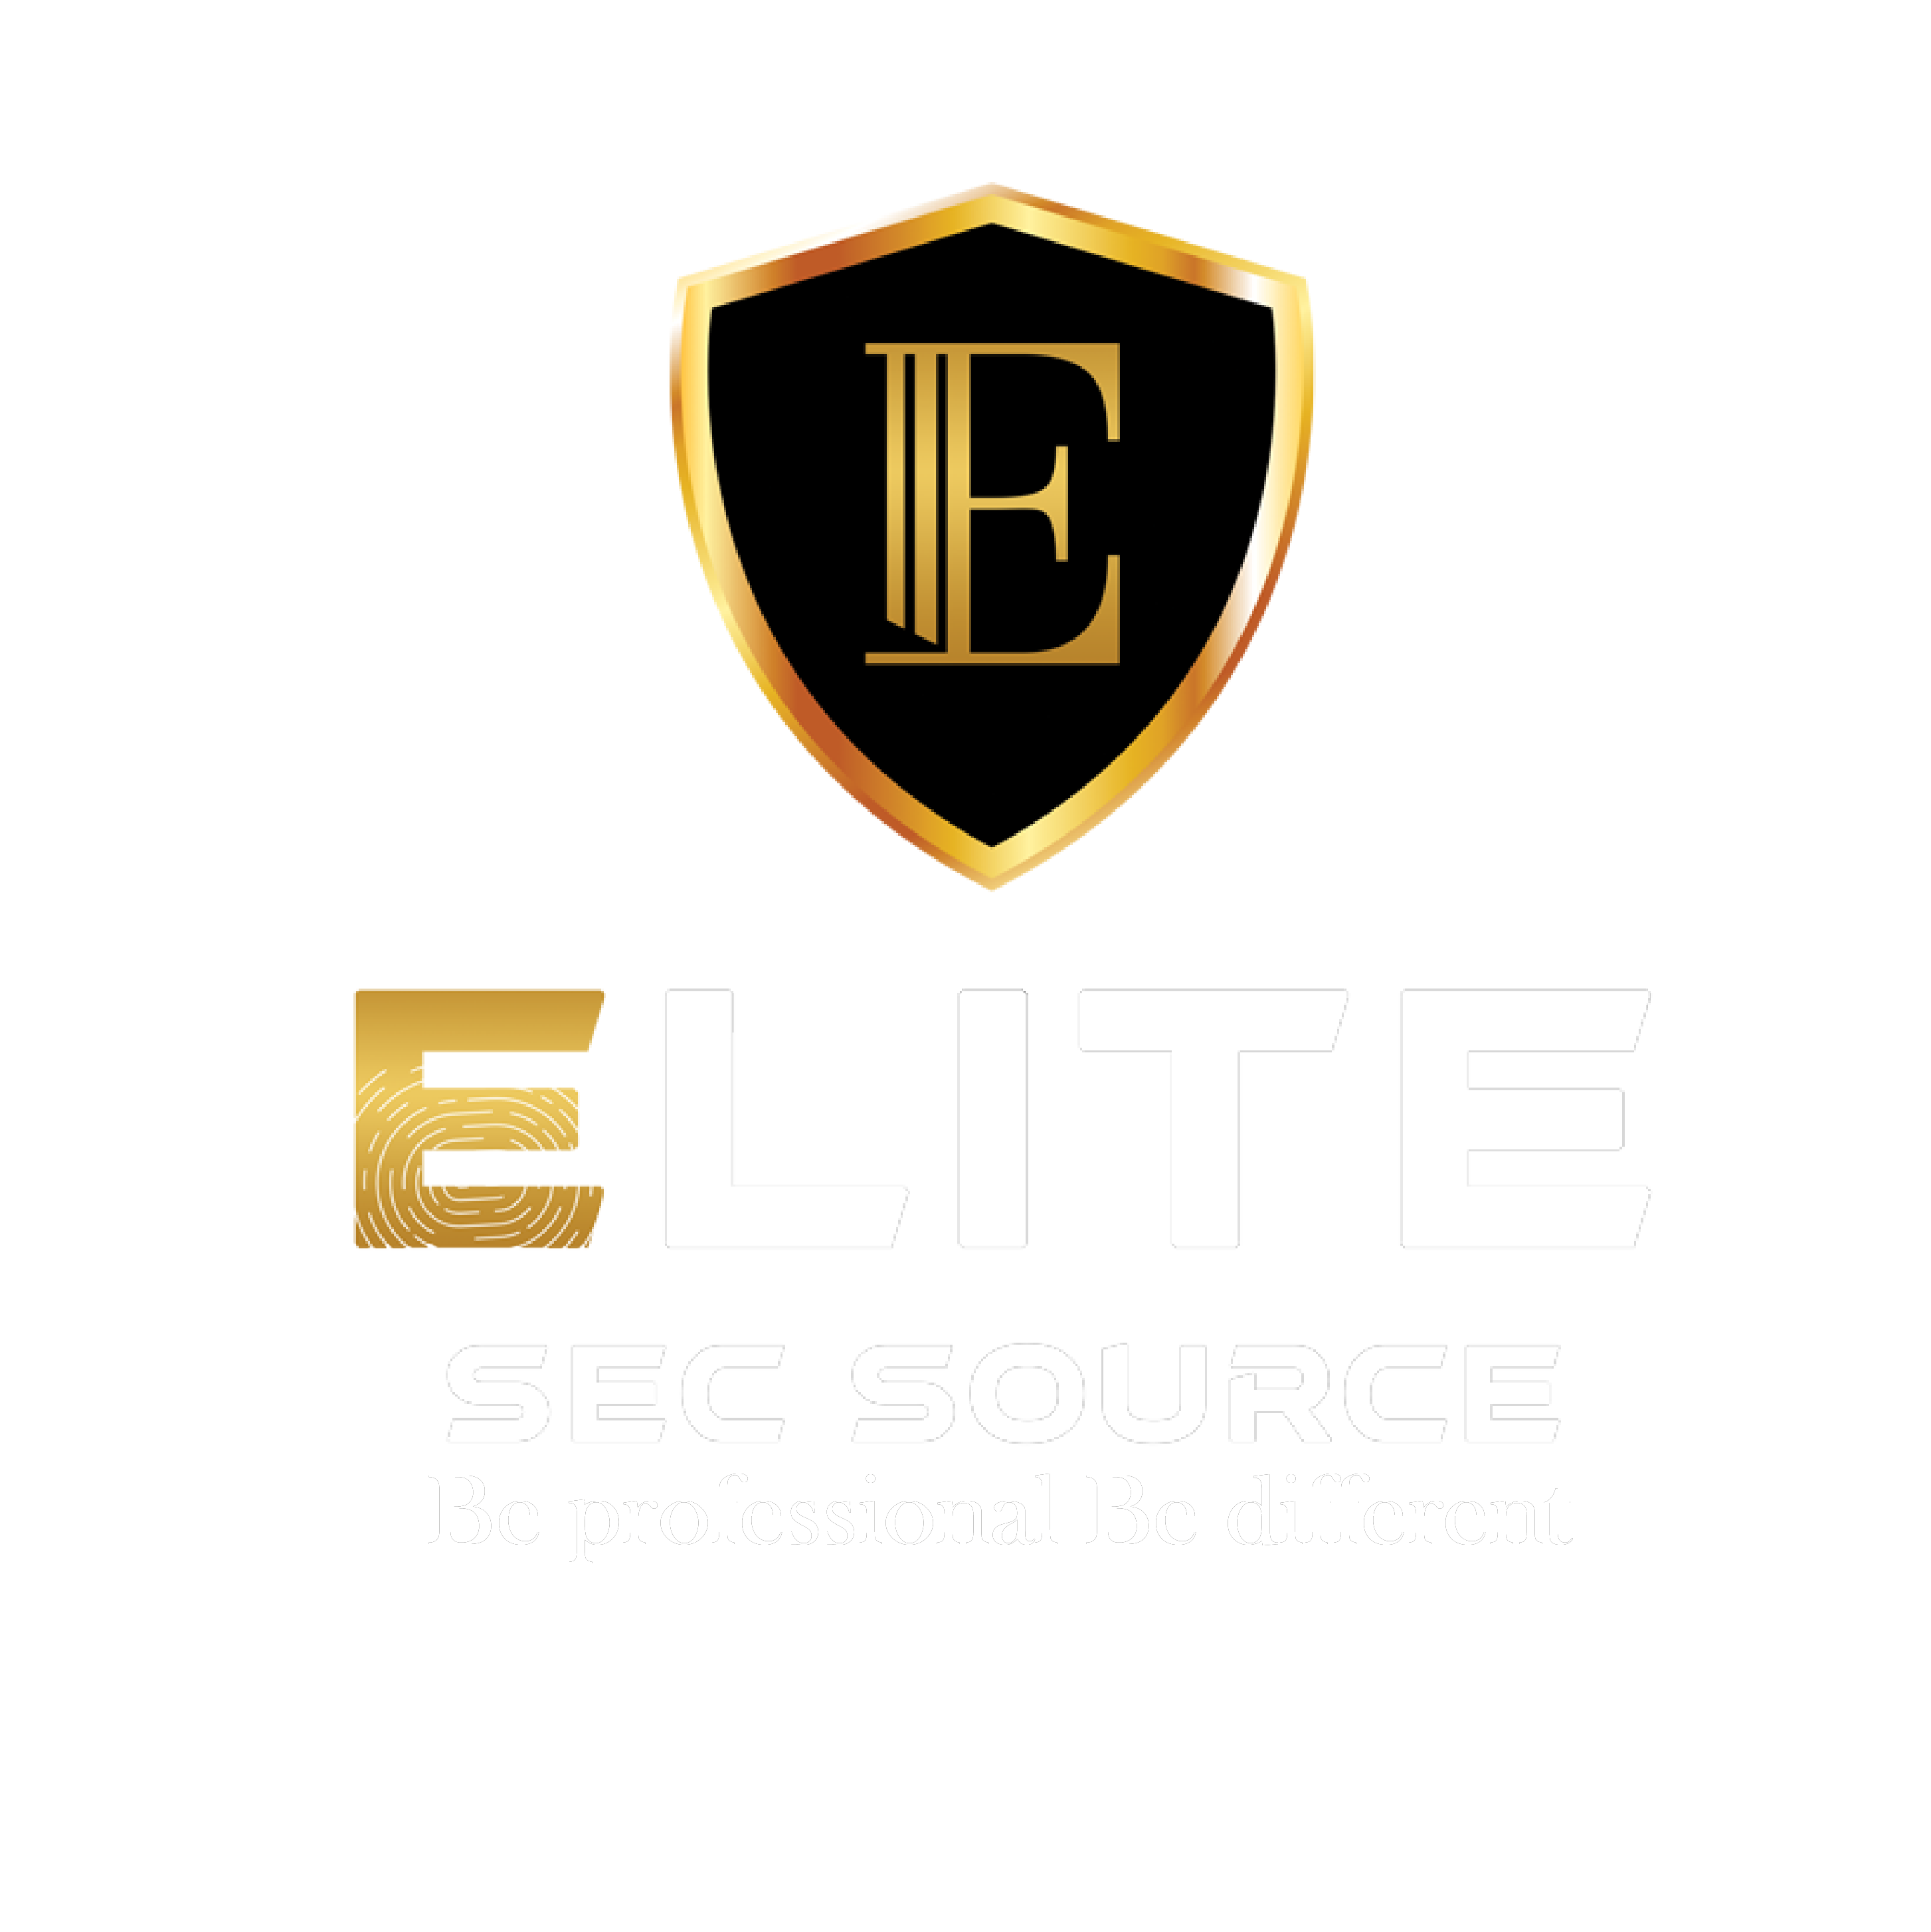 Elite Sec Source 